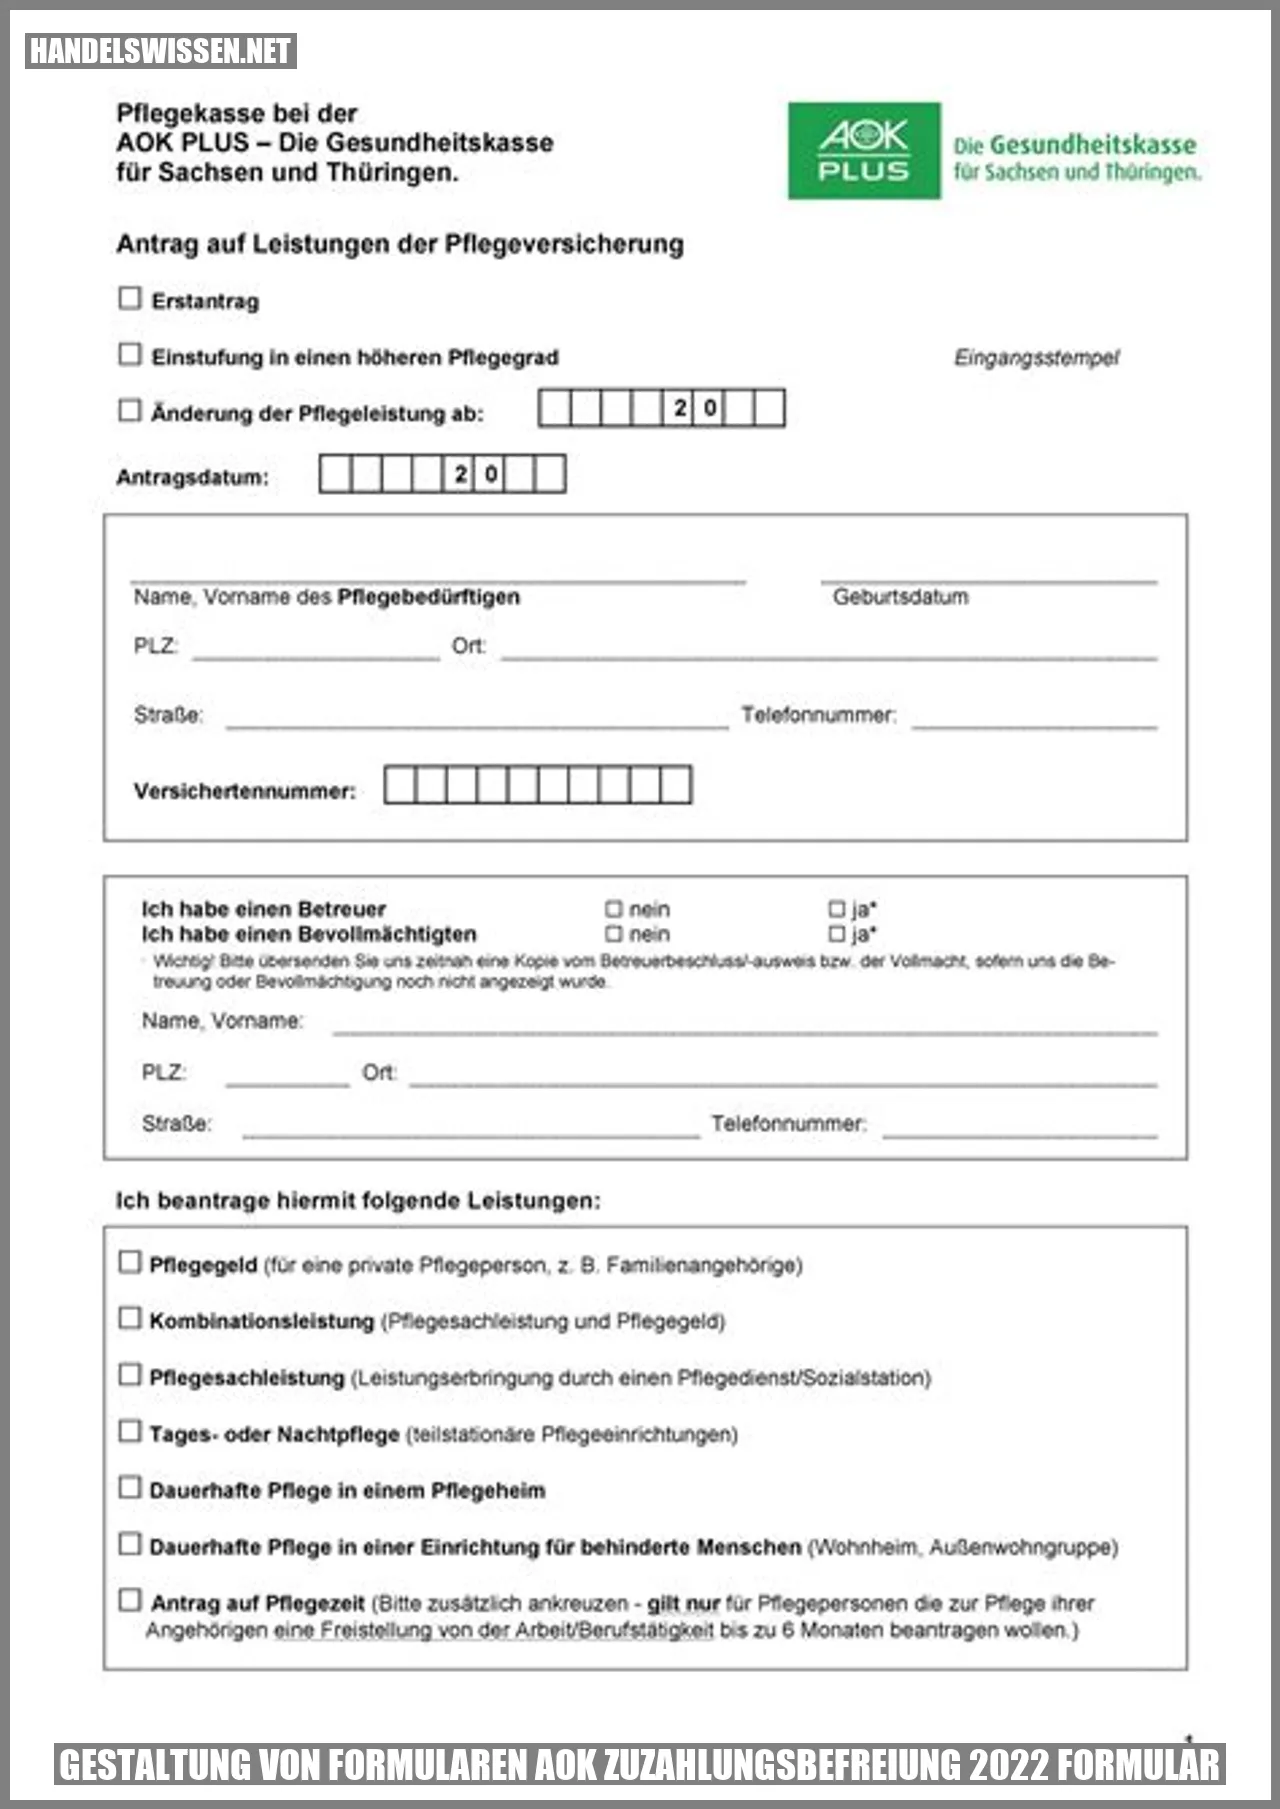 Gestaltung von Formularen AOK Zuzahlungsbefreiung 2022